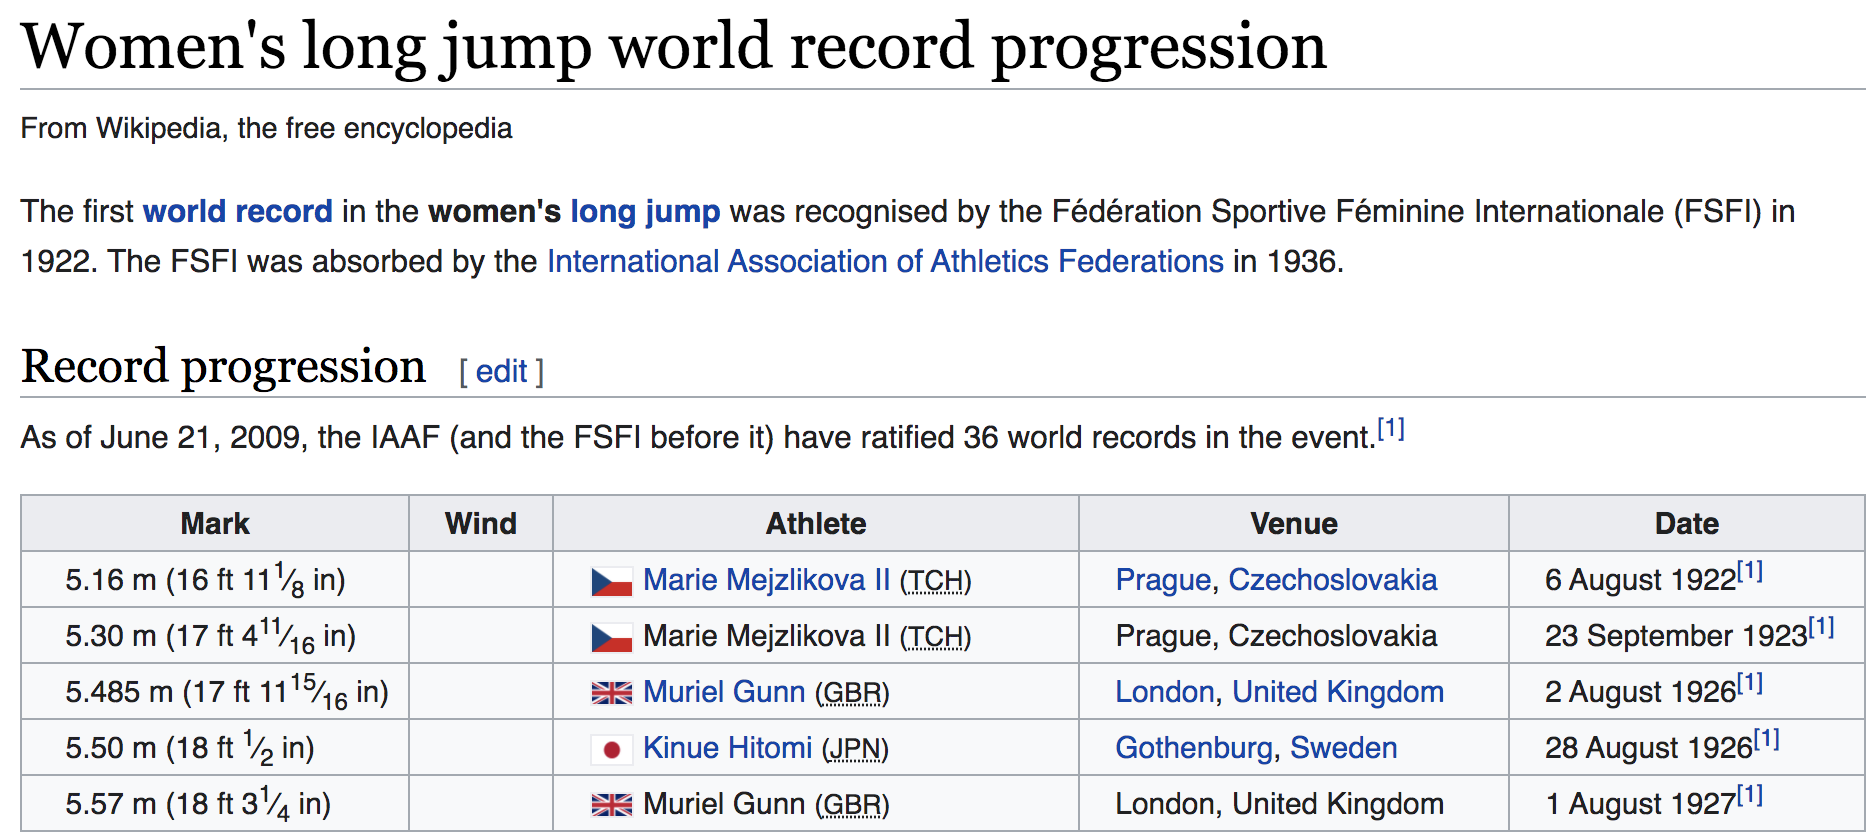 Women's long jump world record progression(source: Wikipedia)